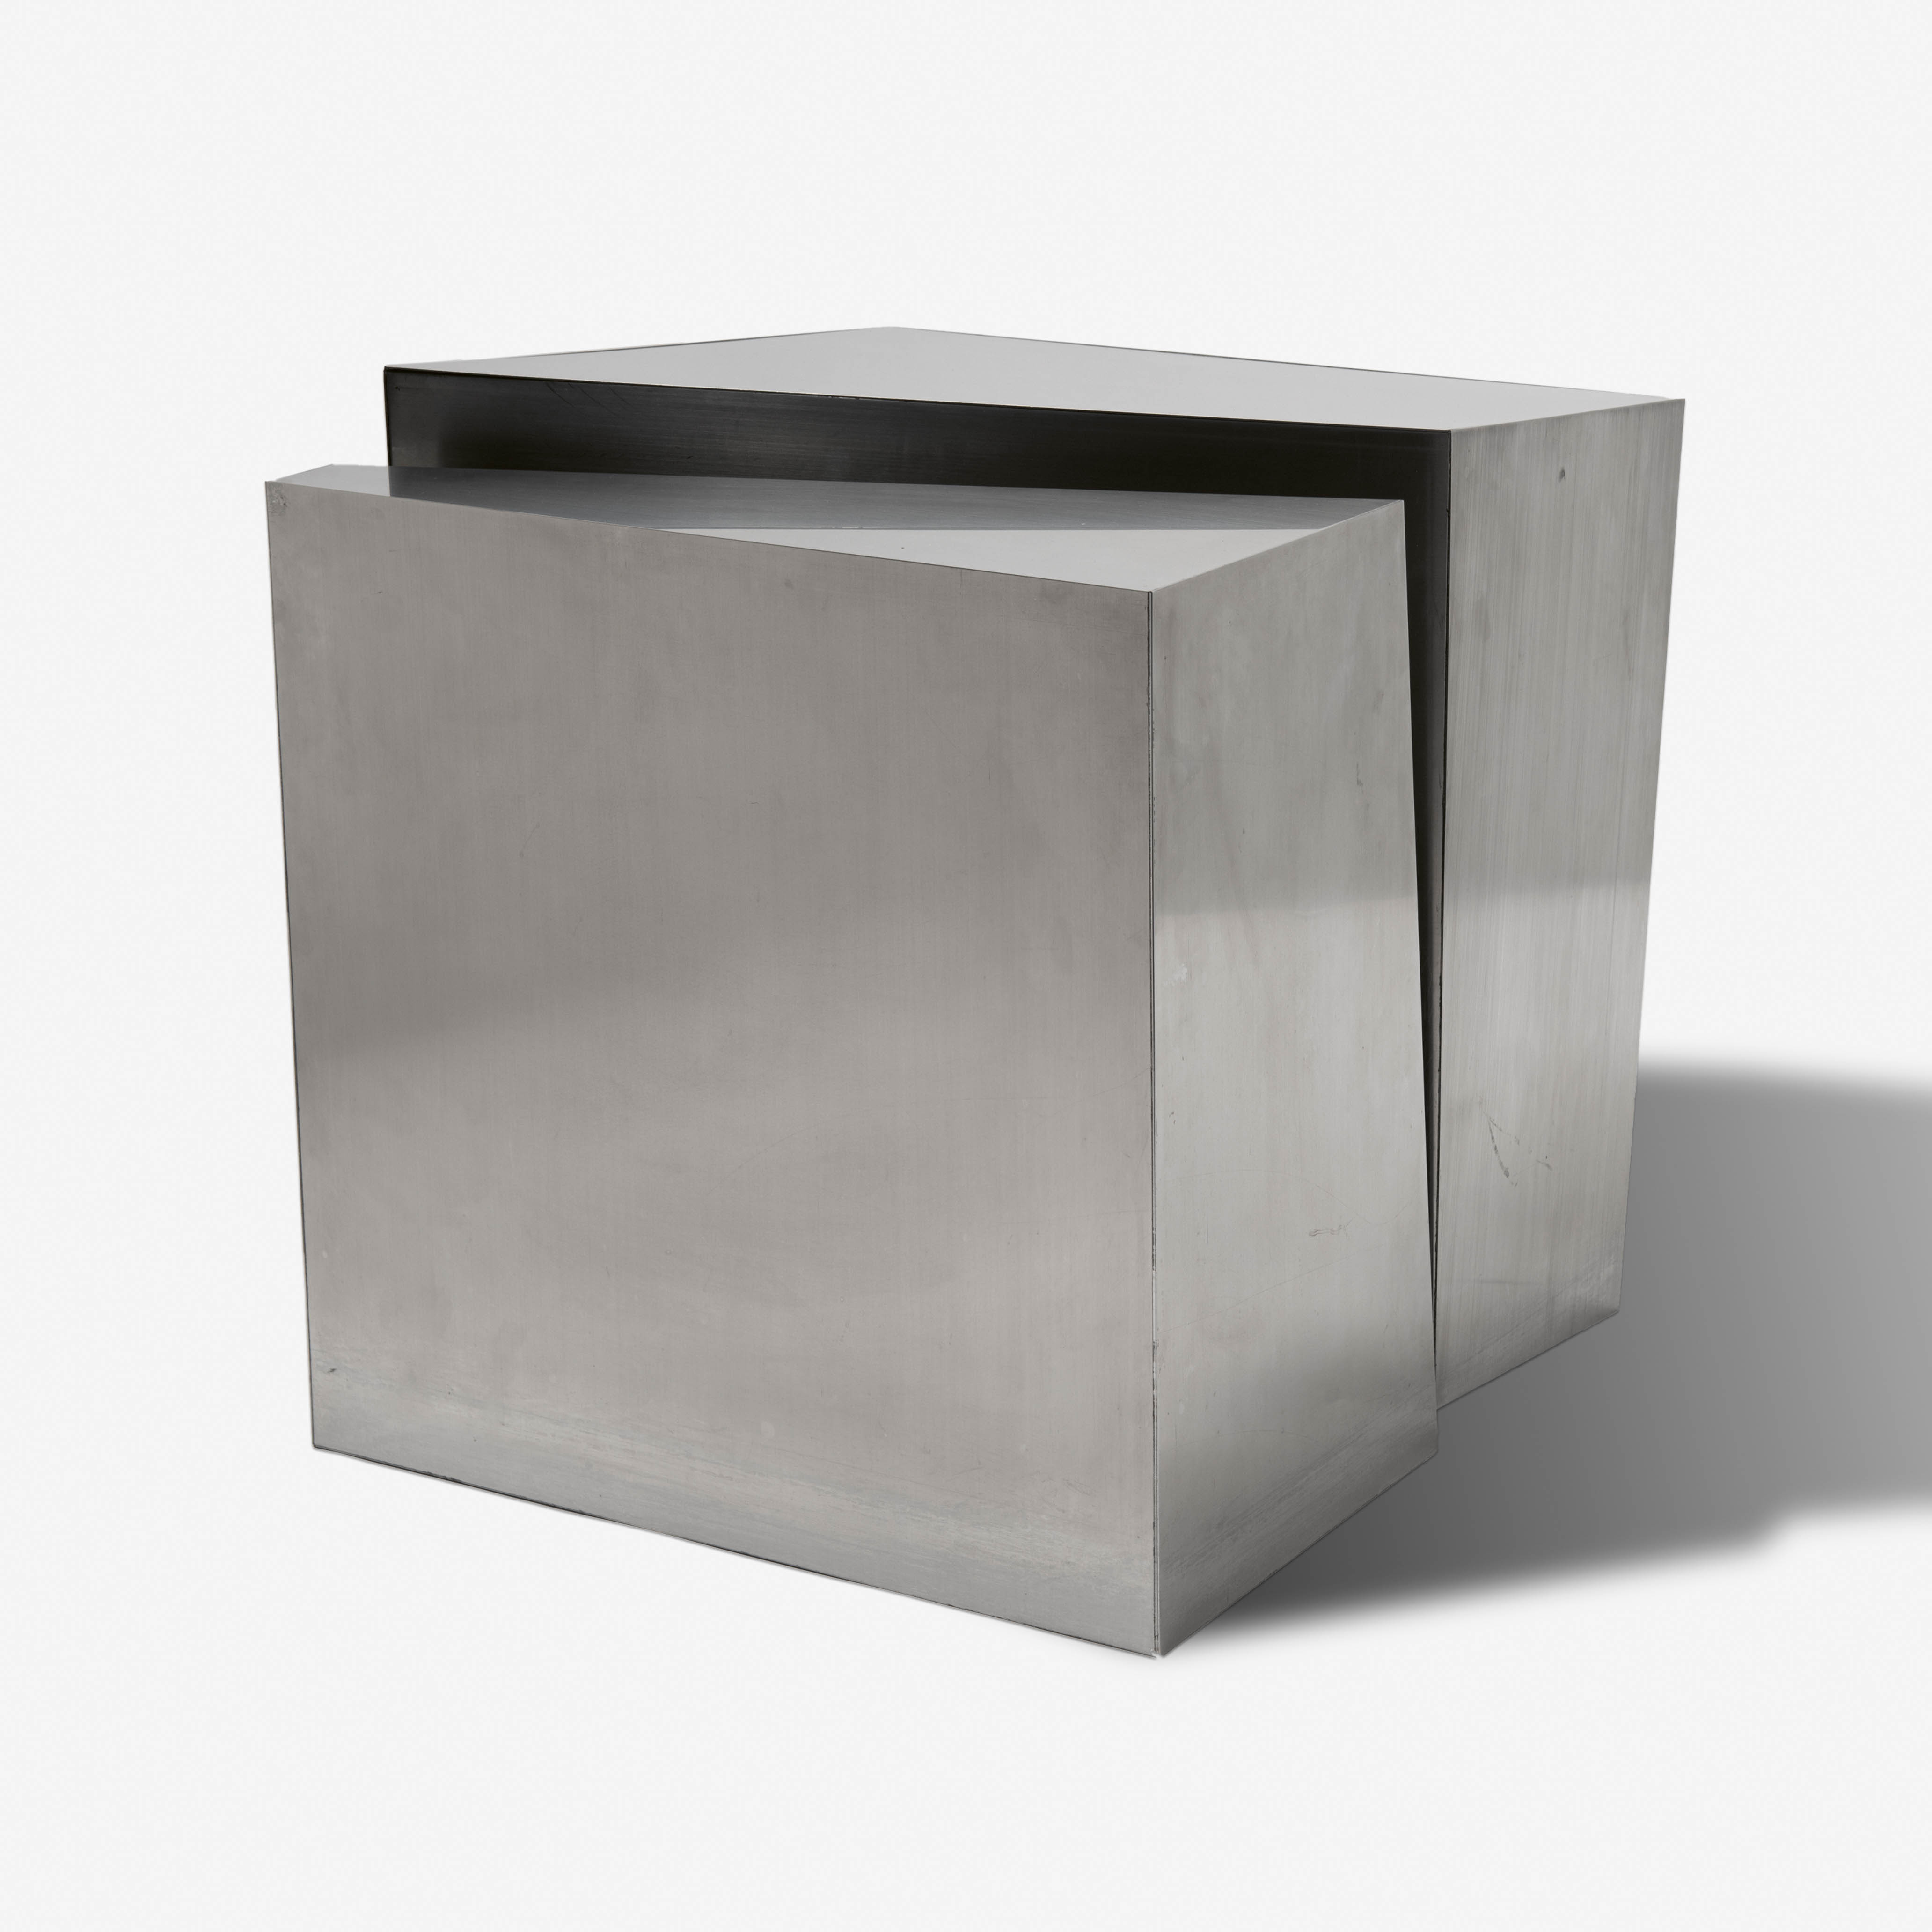 Kubus (Cube) (1980-1990)